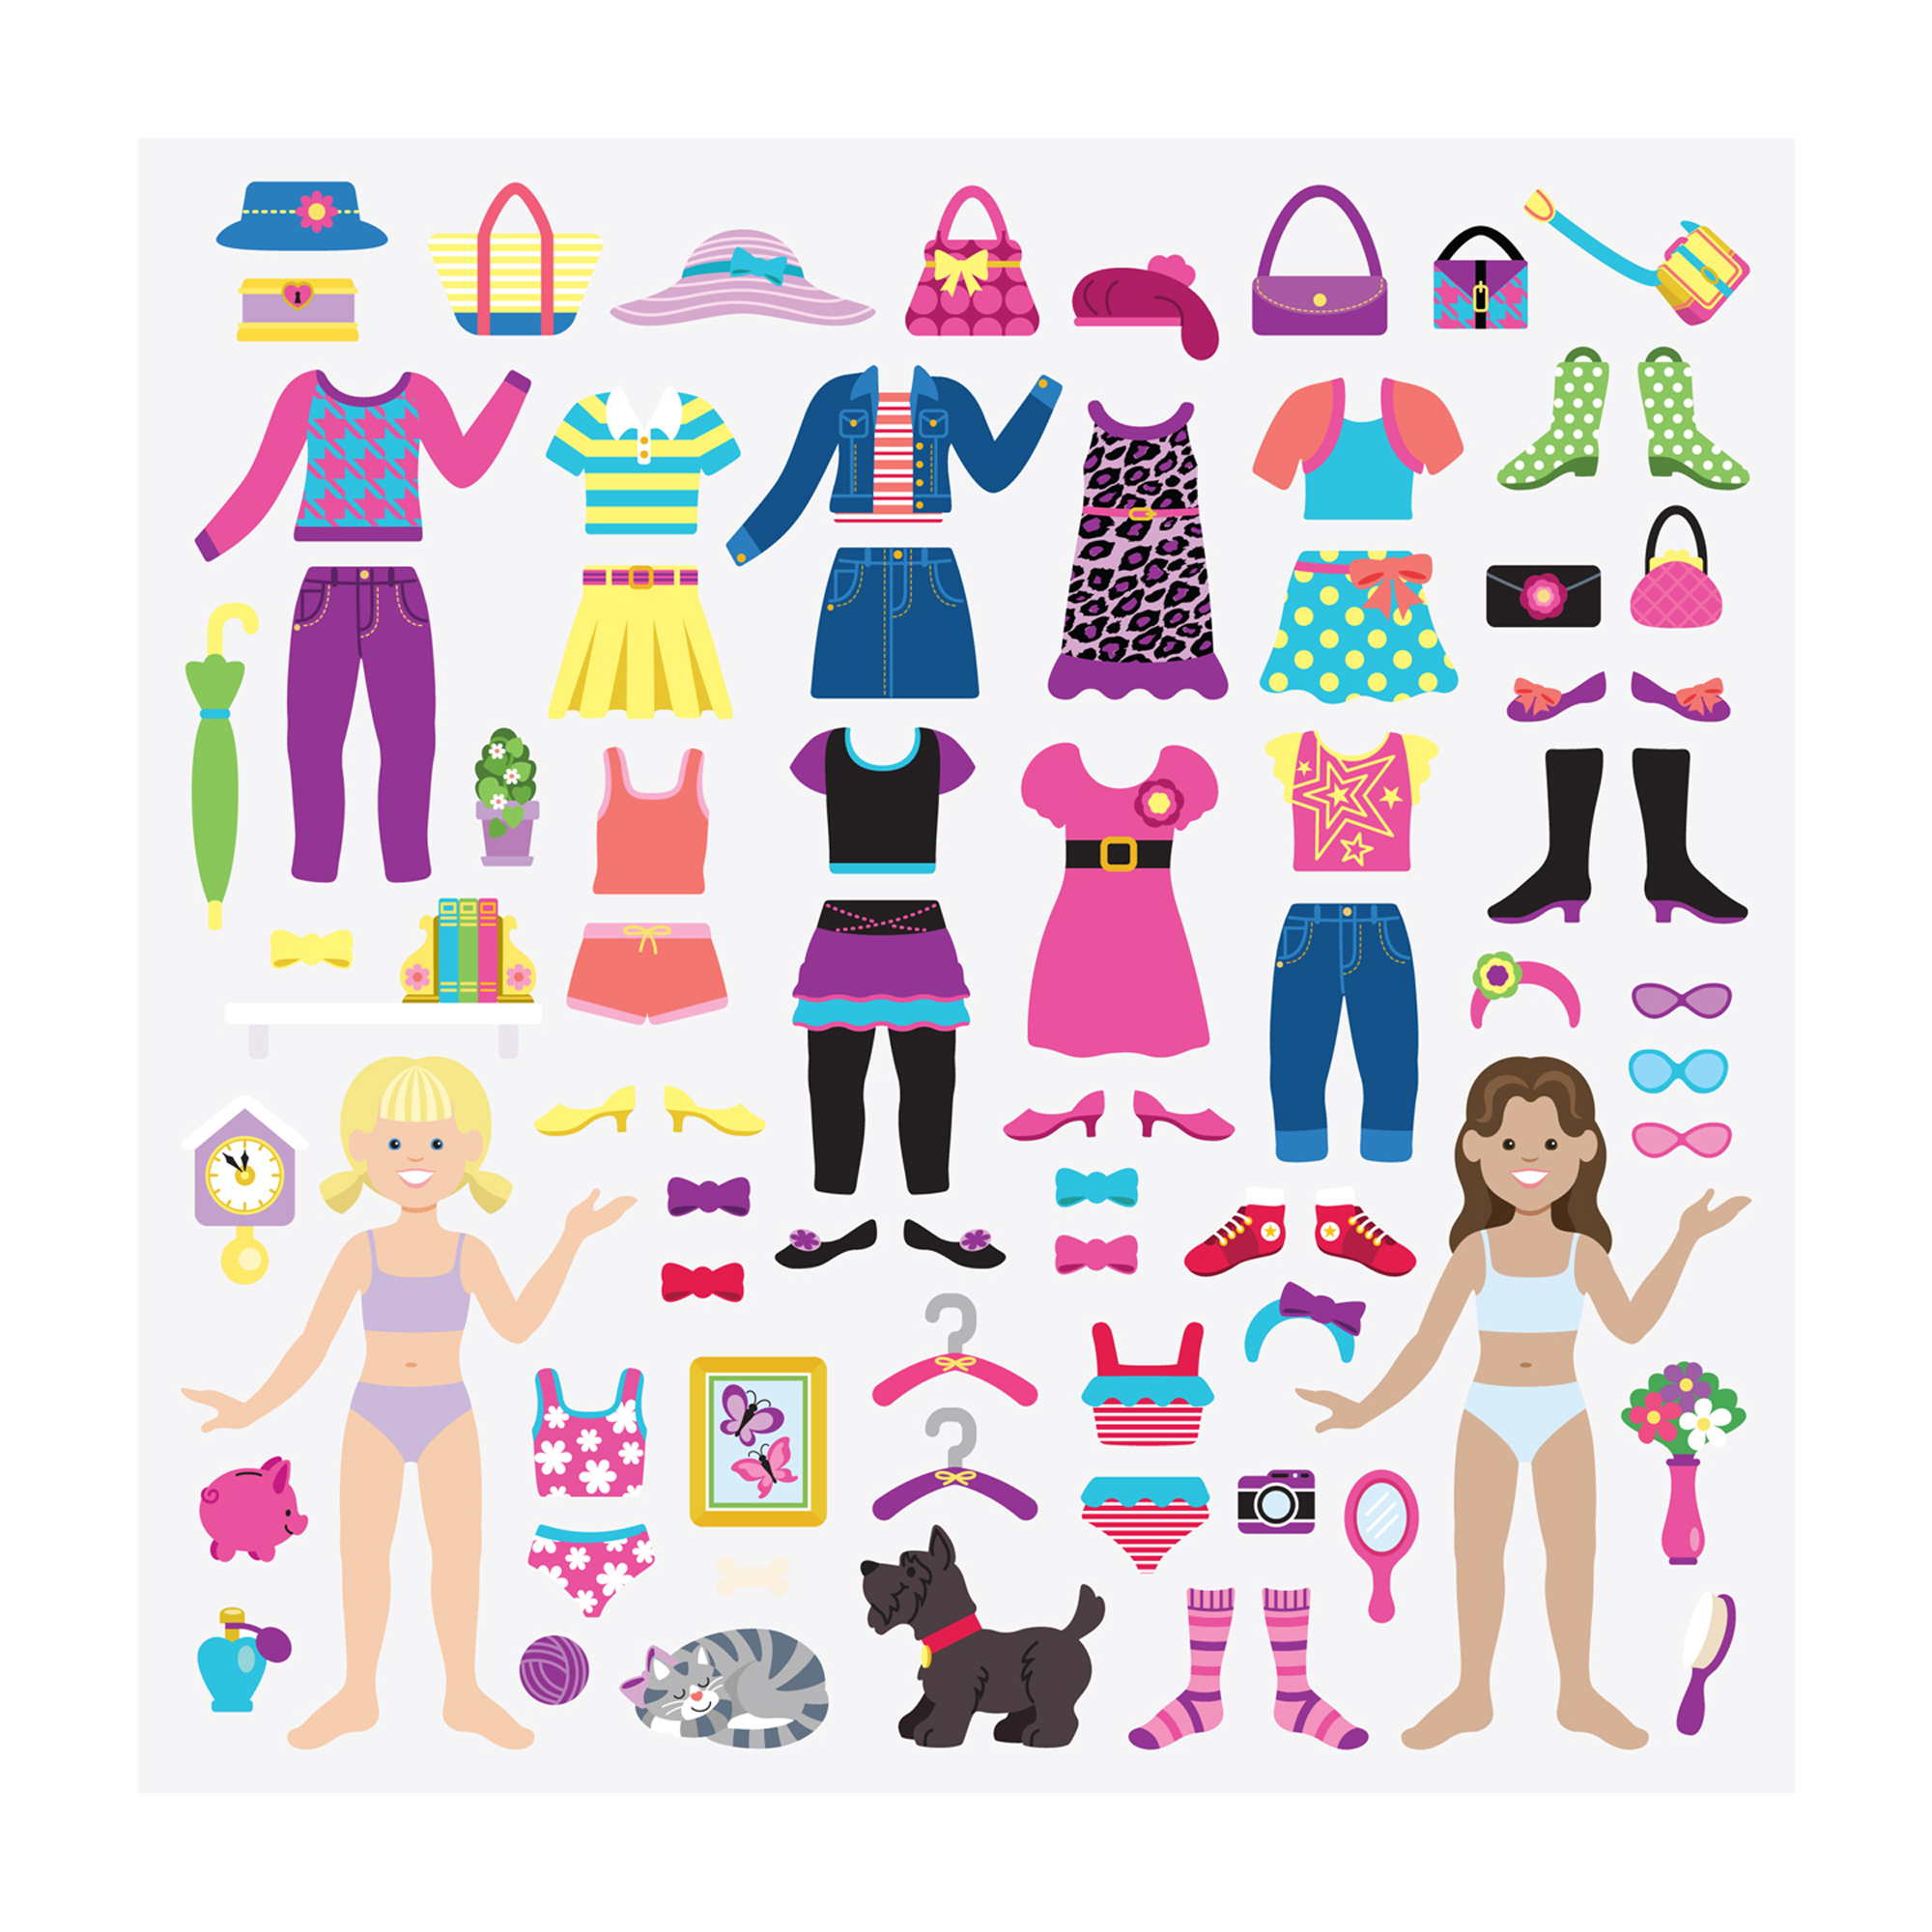 Кукла с одеждой распечатать цветные. Melissa Doug наклейки многоразовые. Бумажные куклы с одеждой. Кукли со деждой. Одежда для бума ждны кукол.